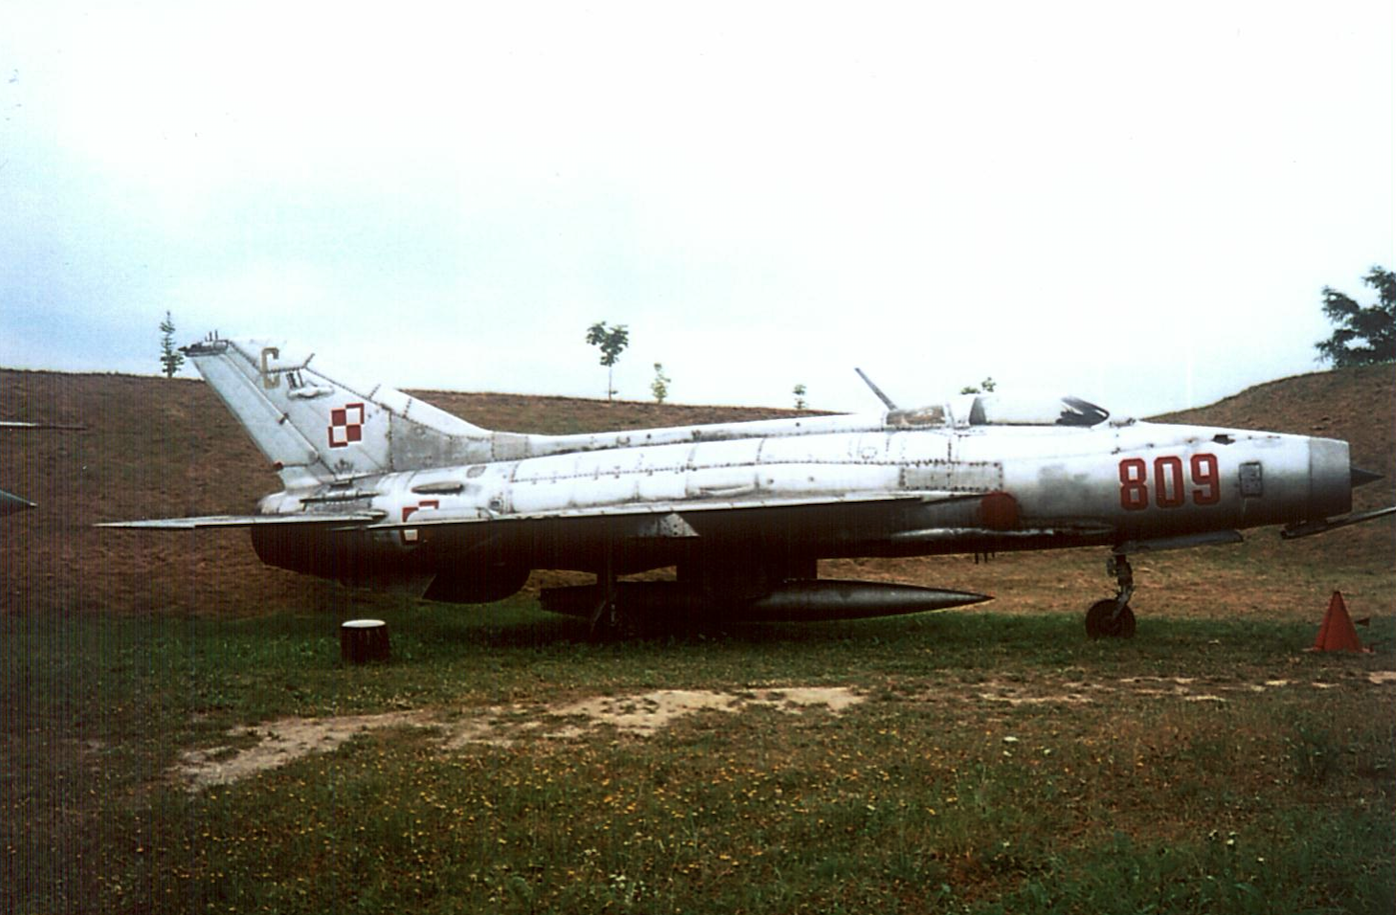 MiG-21 F-13 nb 809 nr 740809. Czyżyny 2002 rok. Zdjęcie Karol Placha Hetman